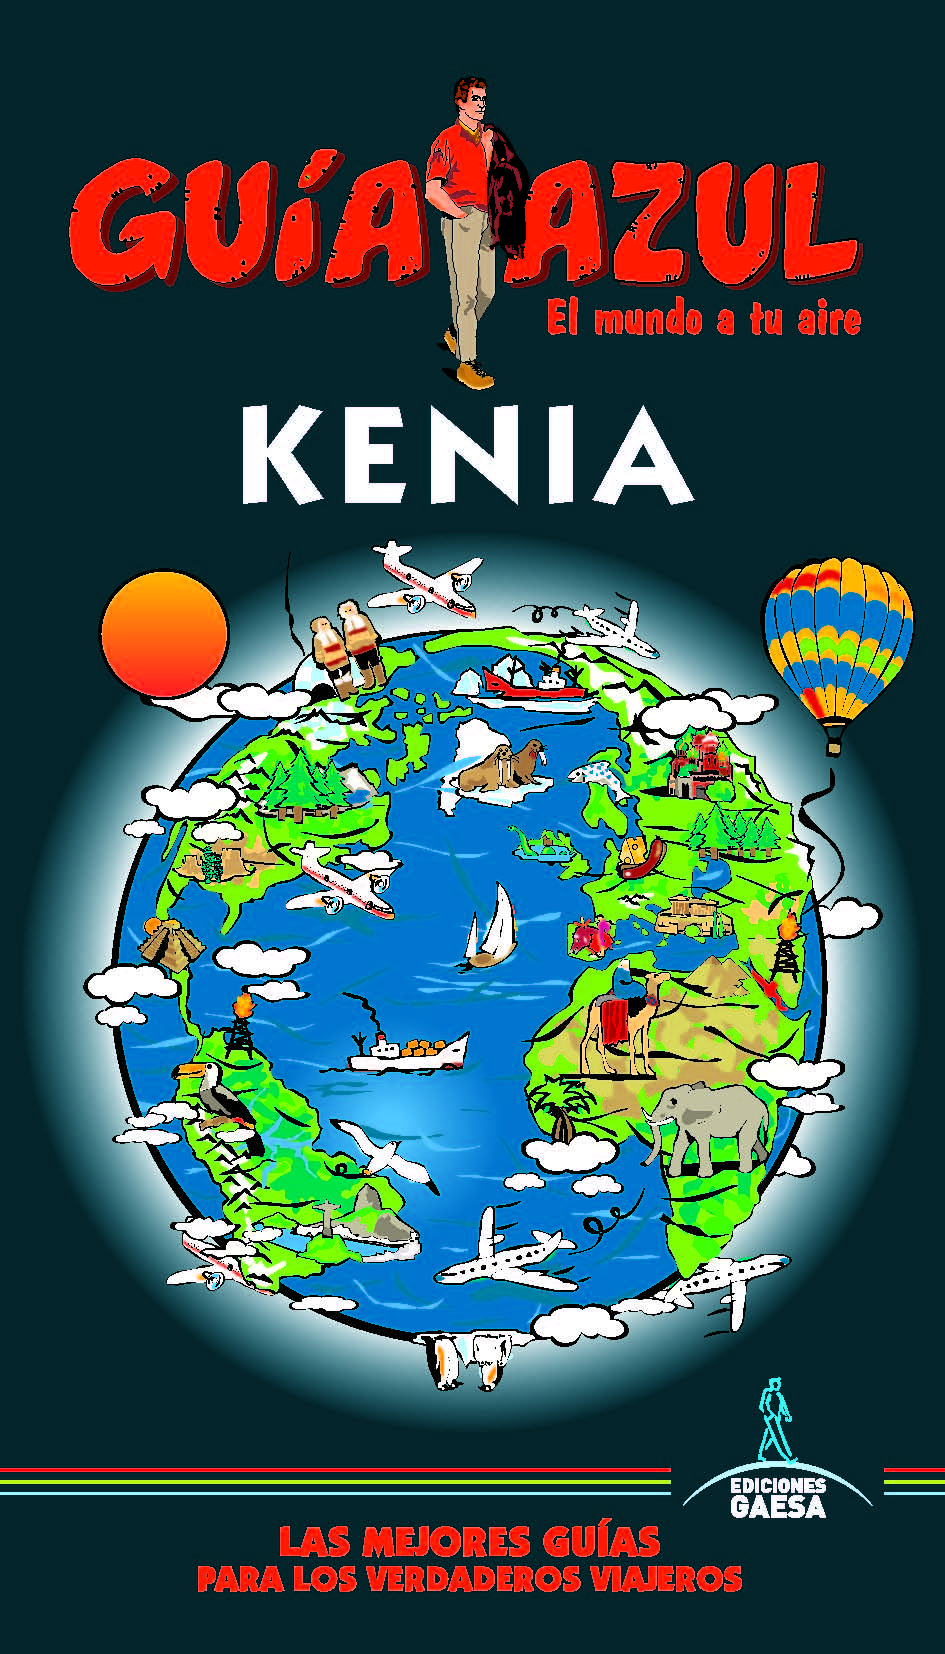 Kenia - Bild 1 von 1